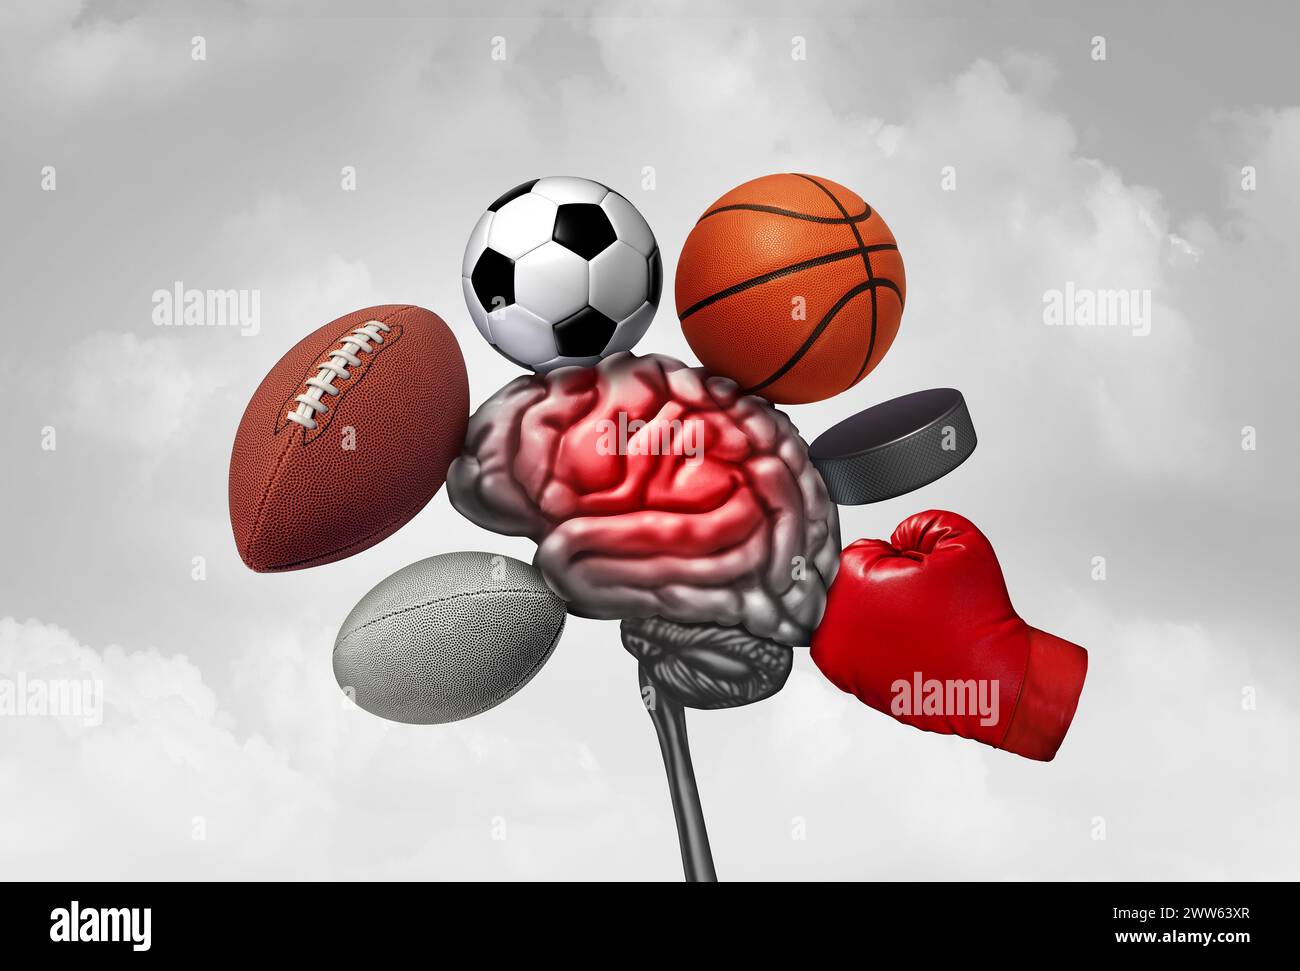 Sporthirnverletzung als Sportverletzung, die eine Gehirnerschütterung verursacht, wie Fußball Hockey Rugby Basketball Boxen und Fußball als Ausrüstung oder Athleten abstürzen Stockfoto